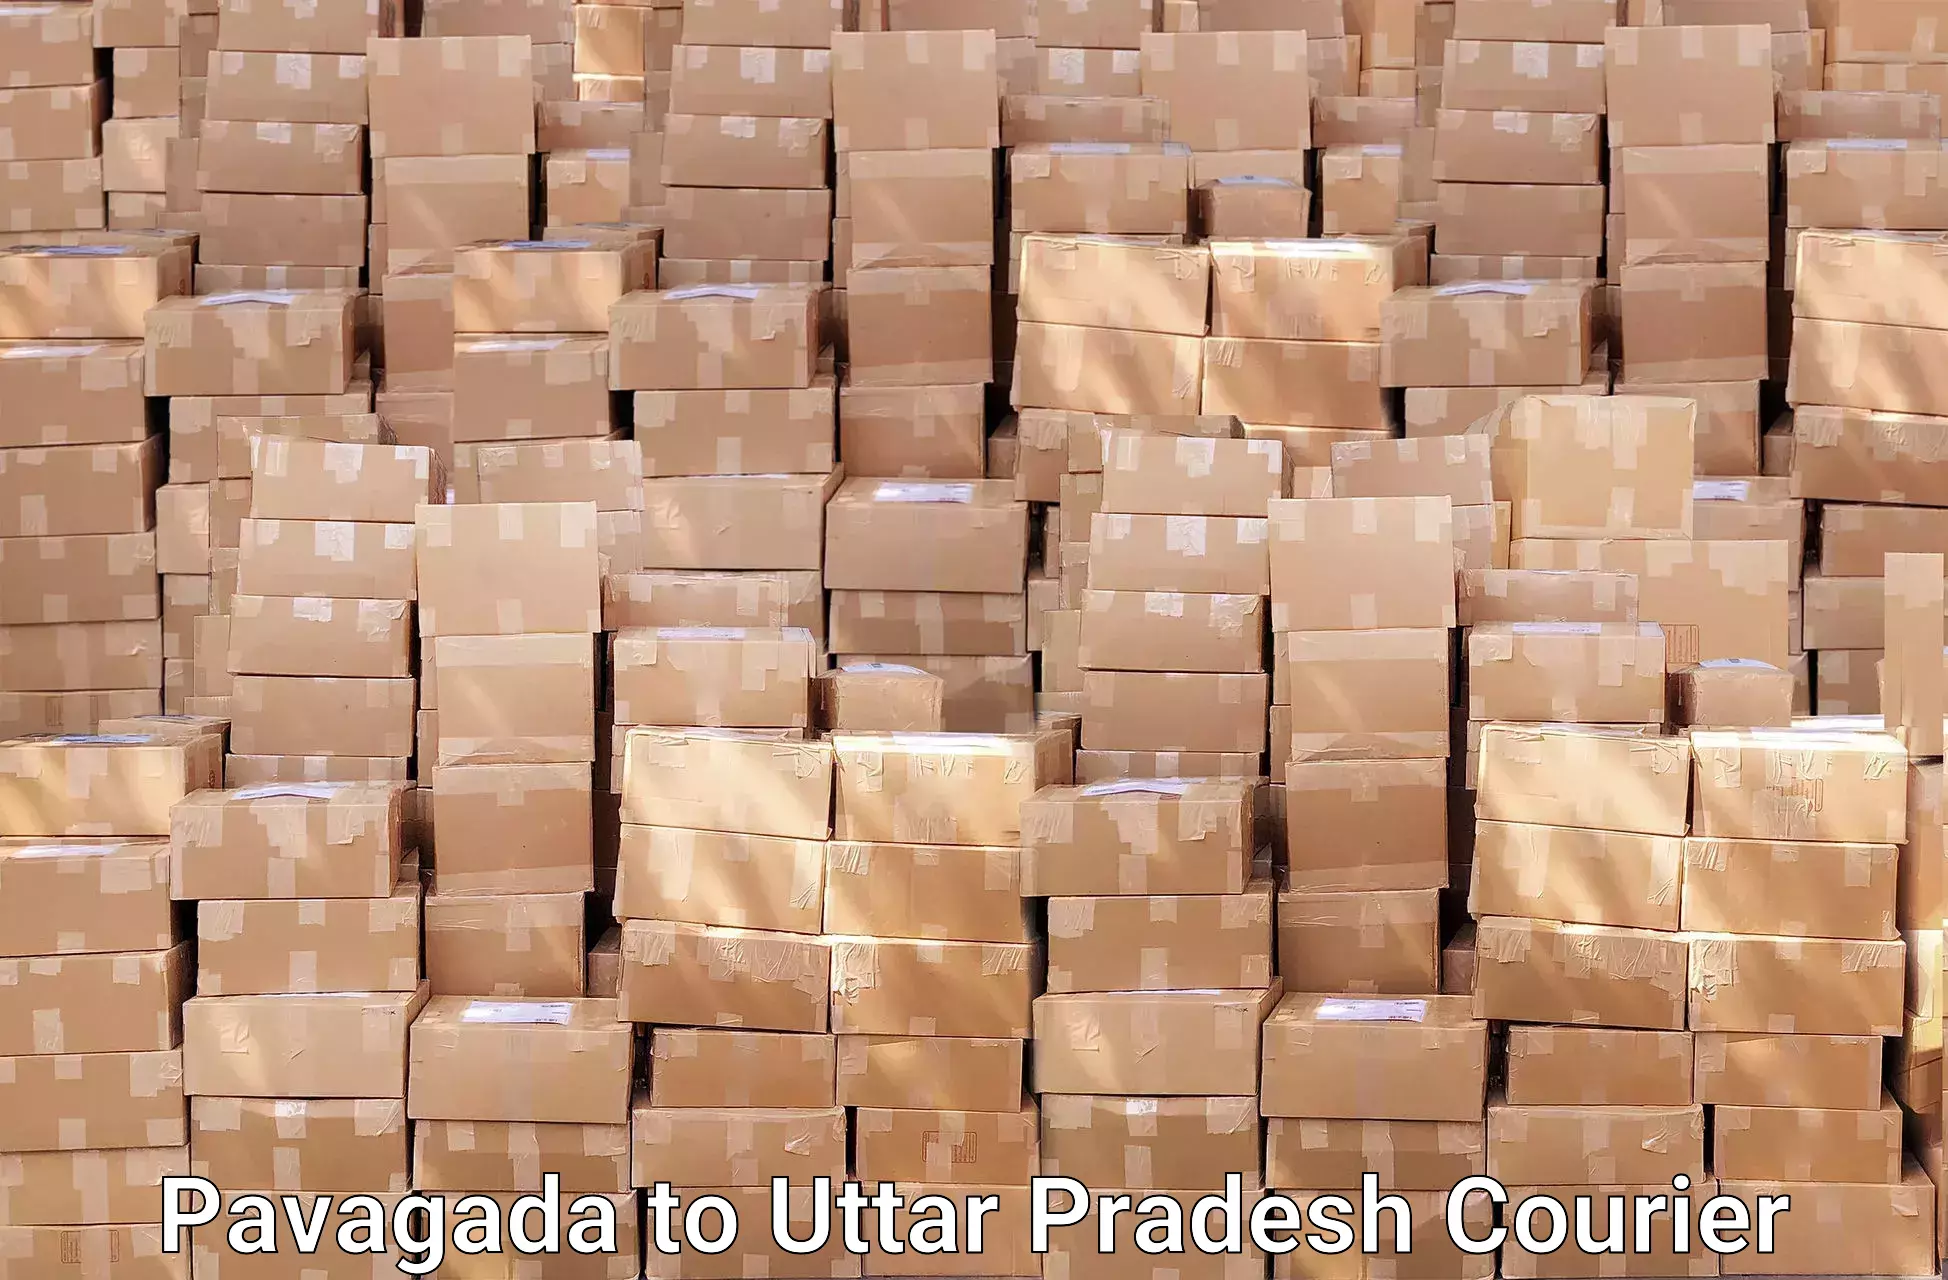 Moving and storage services Pavagada to Uttar Pradesh